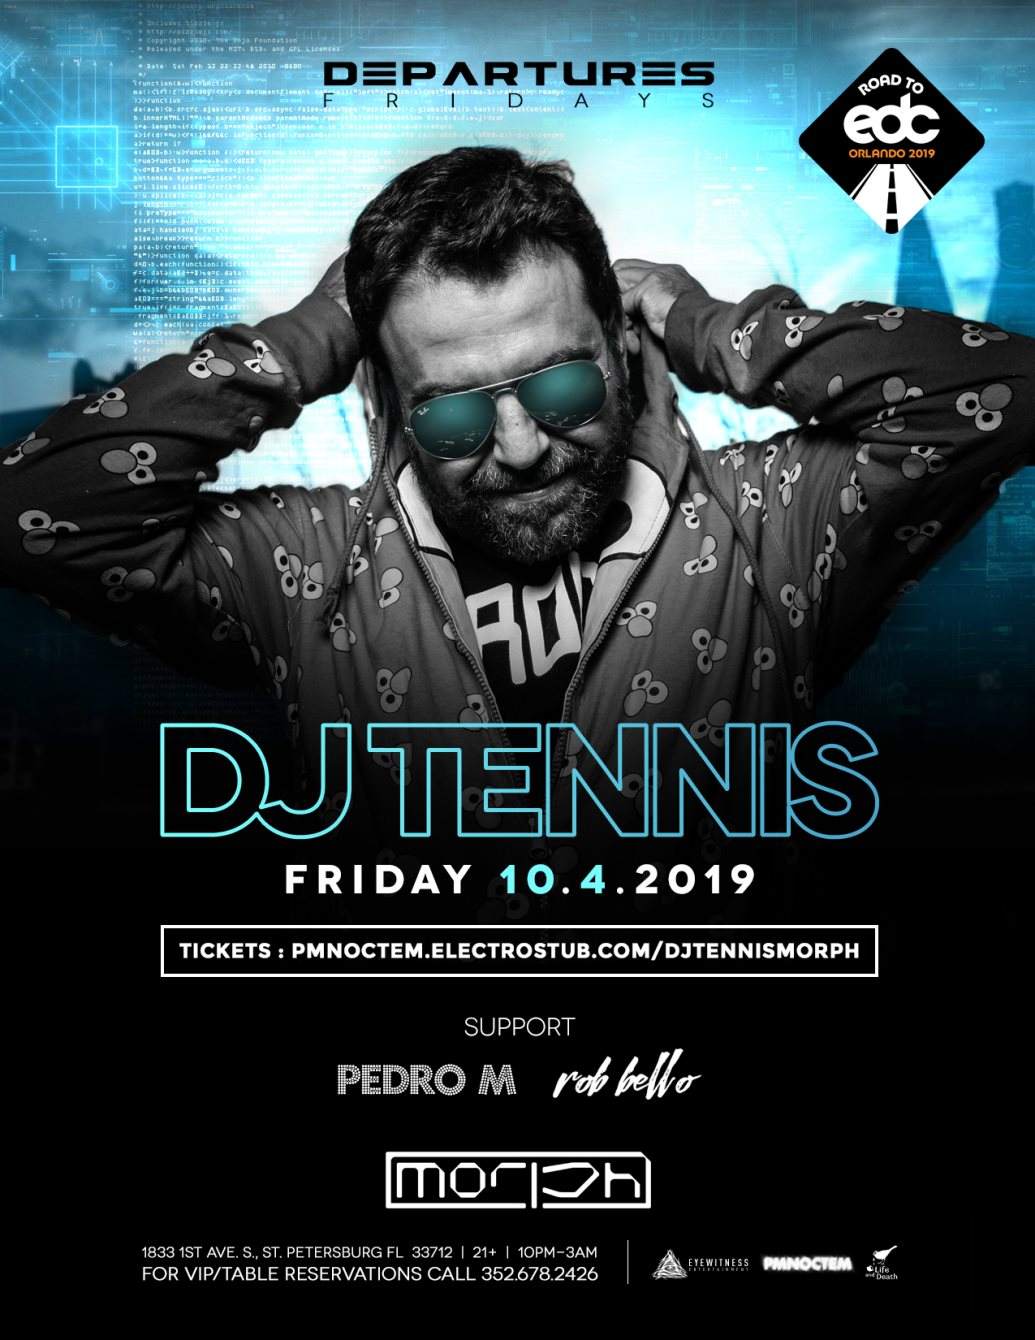 Departures presents: DJ Tennis; Official Road to EDC Orlando - Página frontal